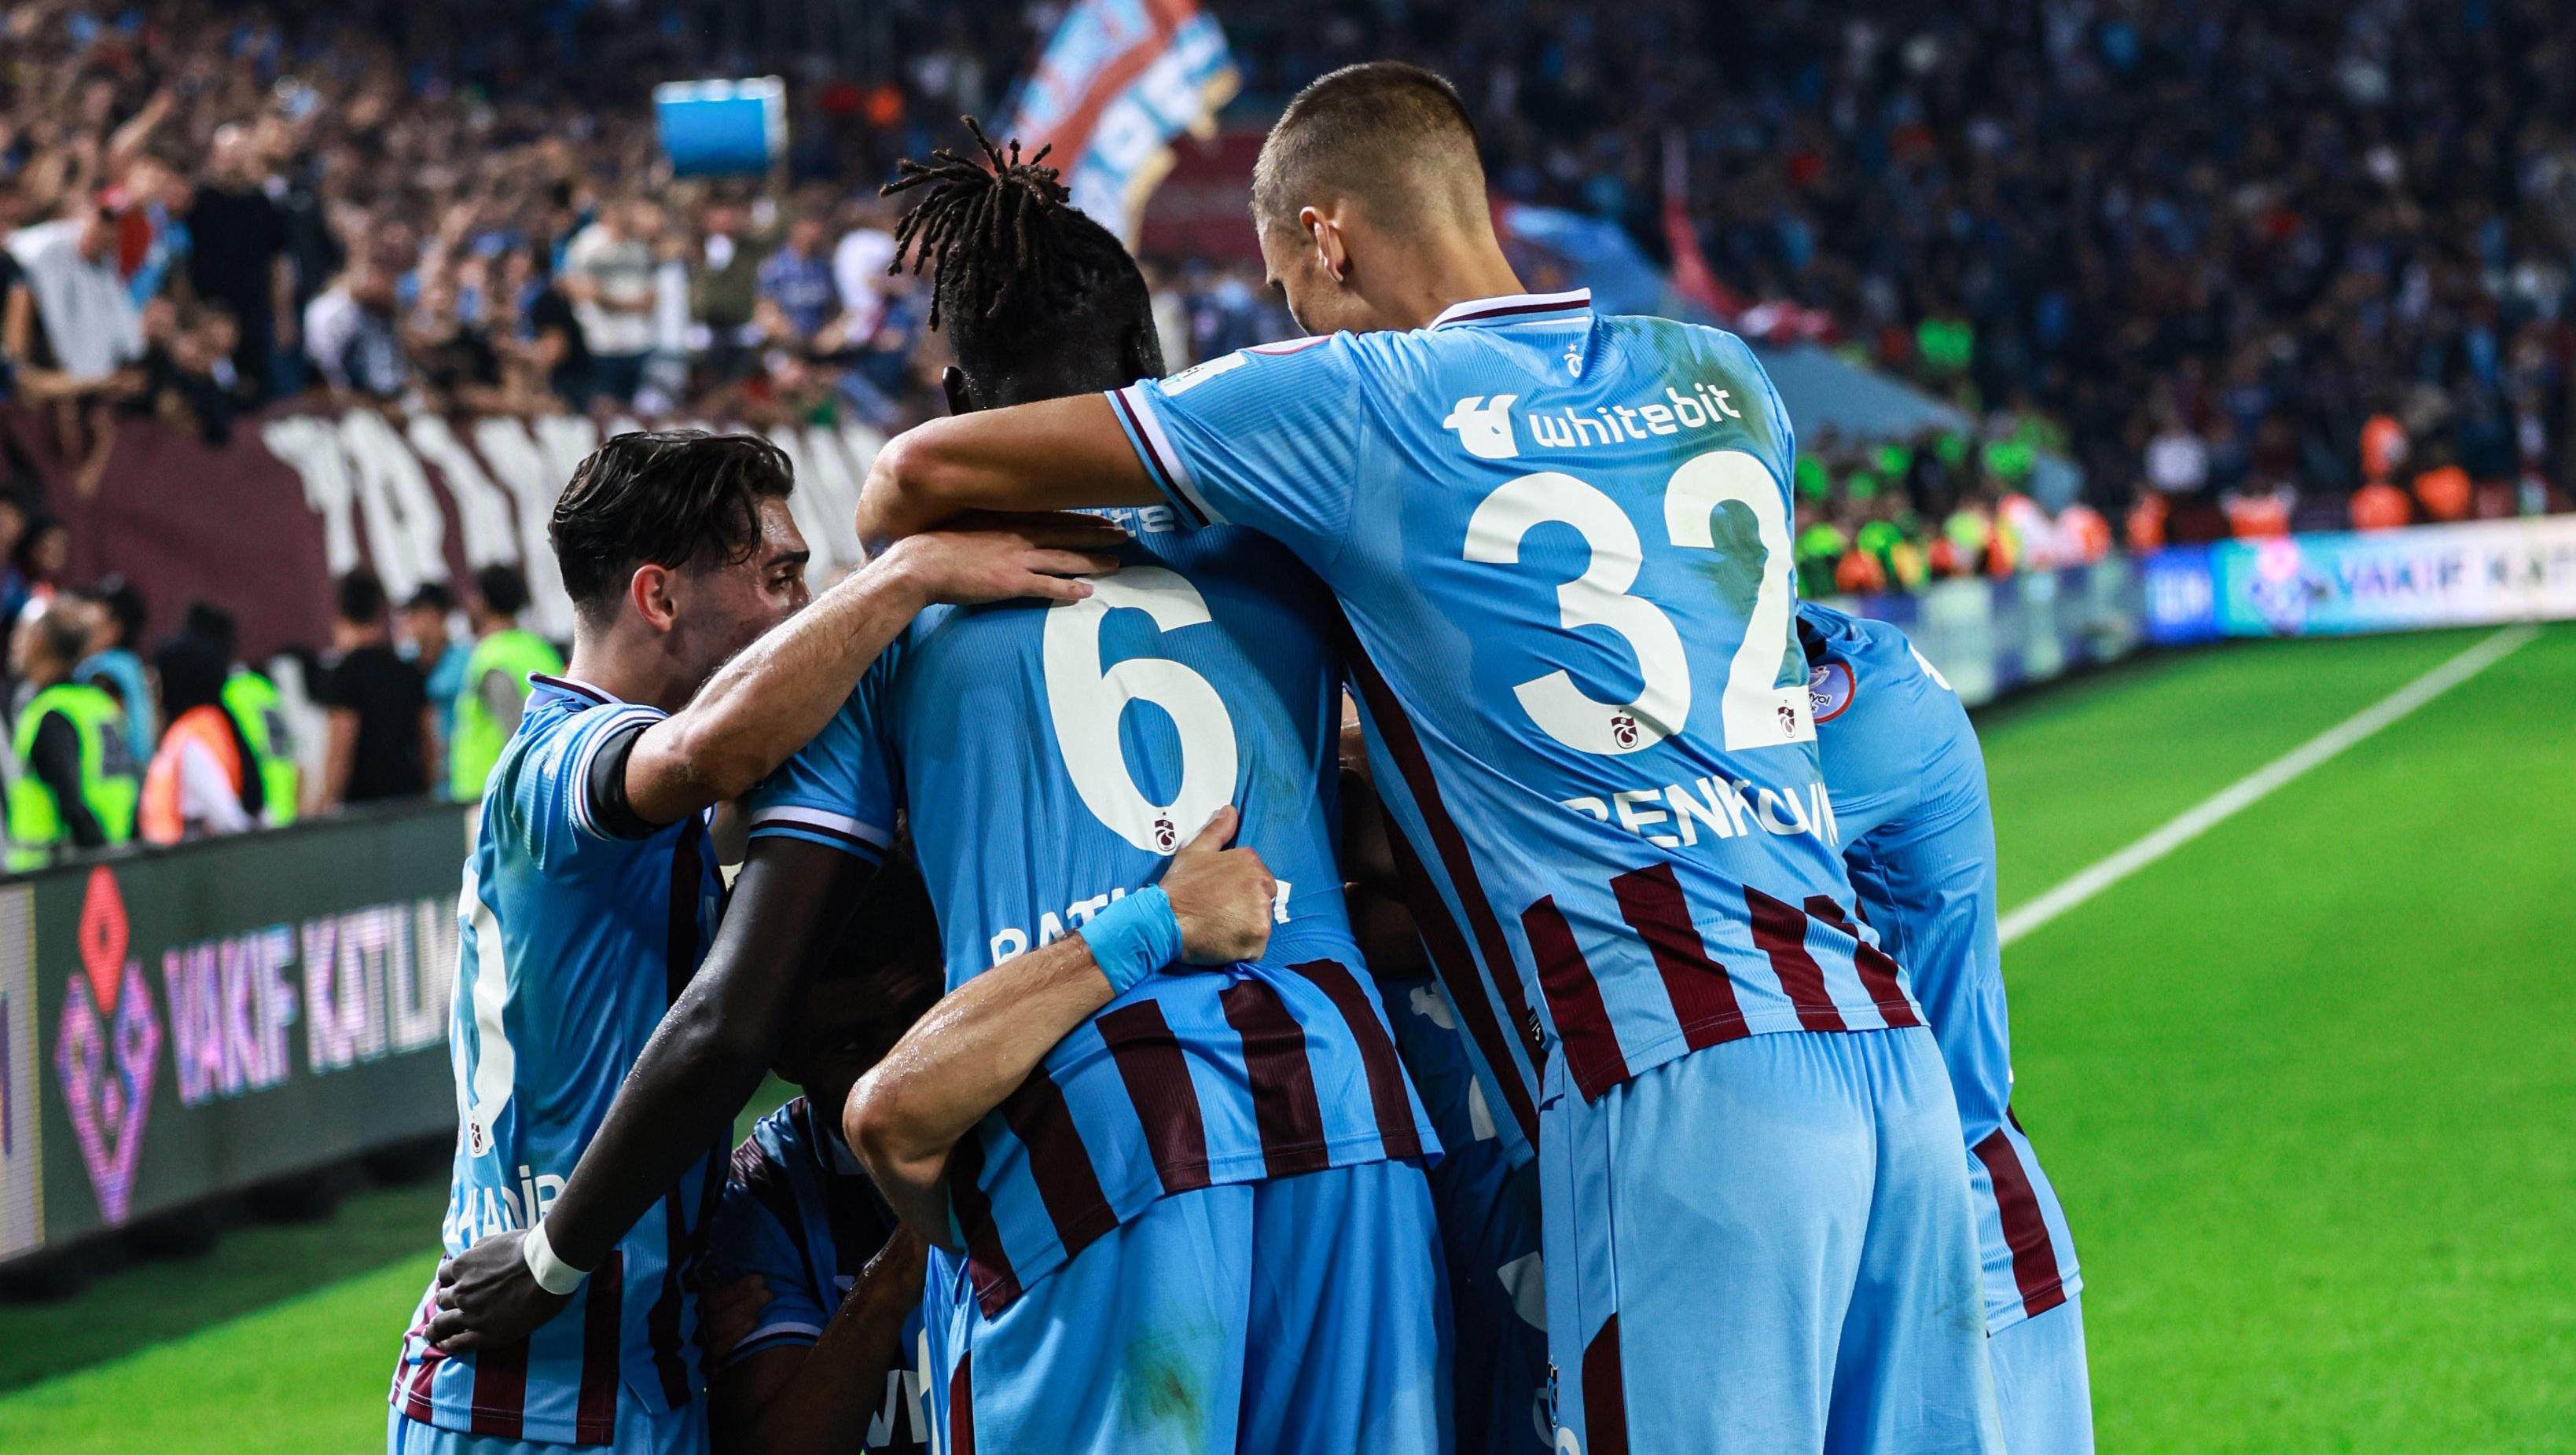 HL - Super Lig - Trabzonspor 3-0 Besiktas